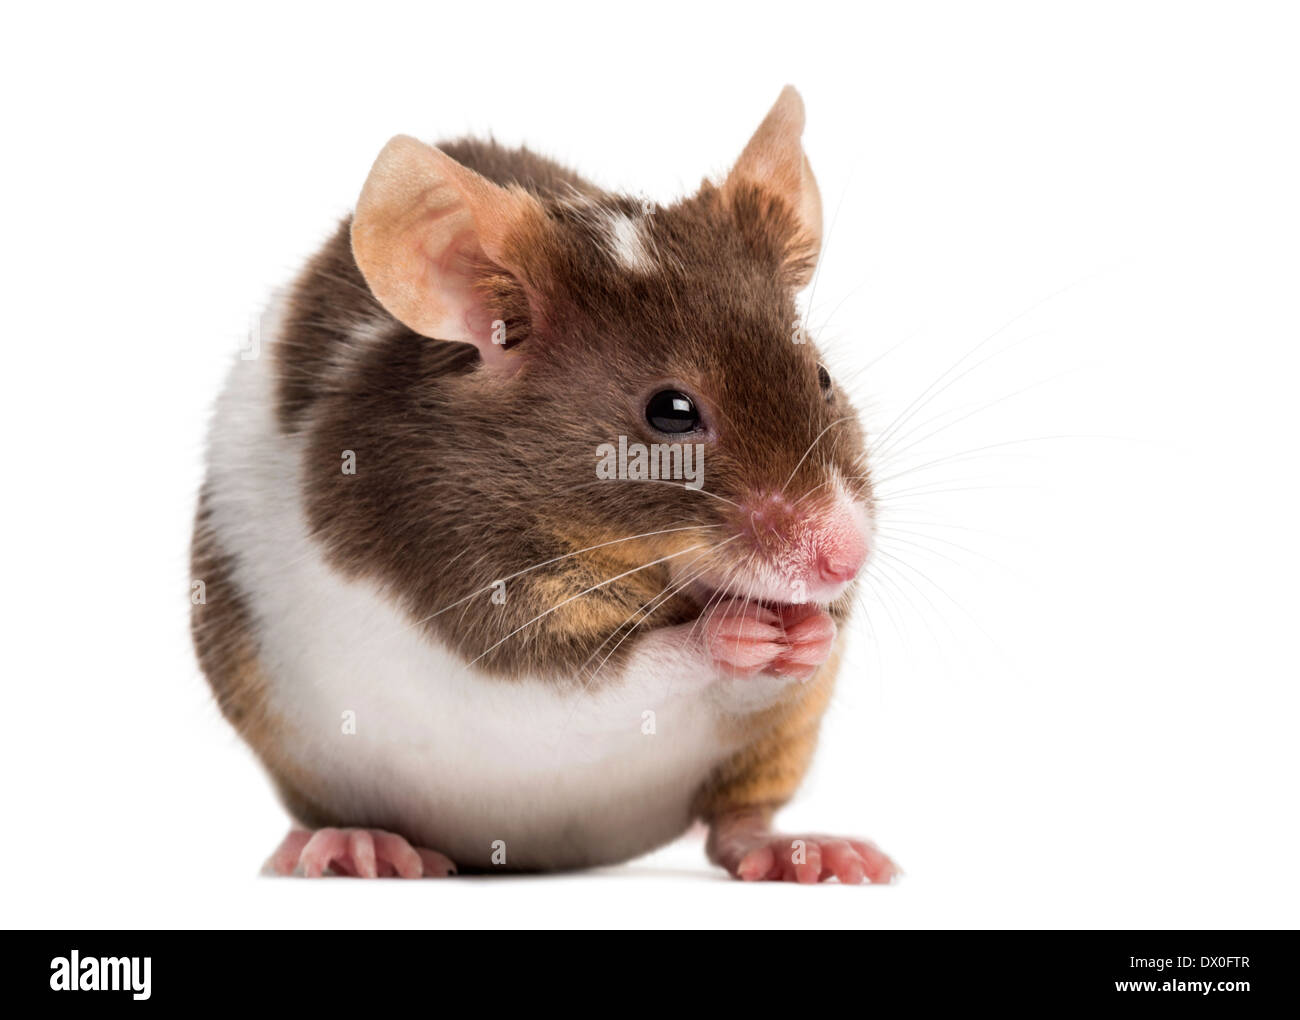 Casa comune mouse, Mus musculus, di fronte a uno sfondo bianco Foto Stock